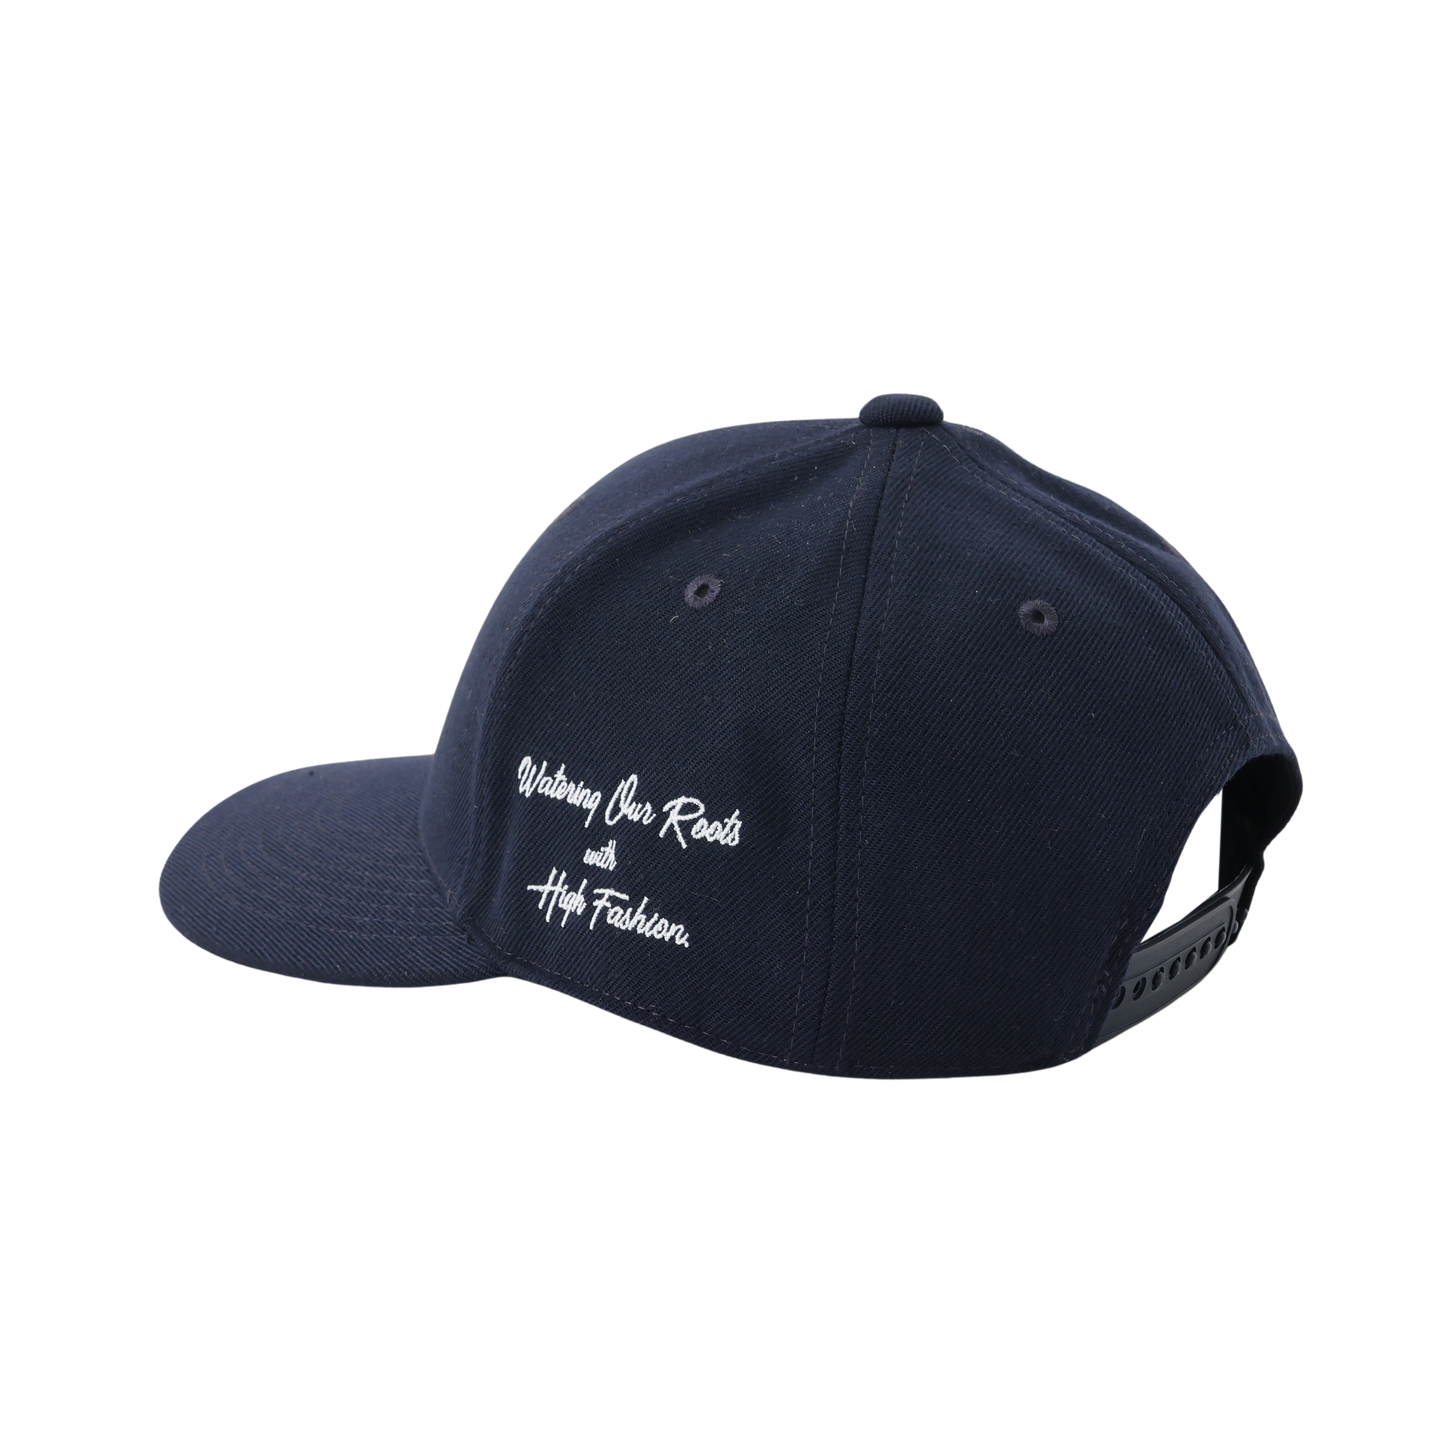 DRIPROOTS TEAM CAP(curve visor)